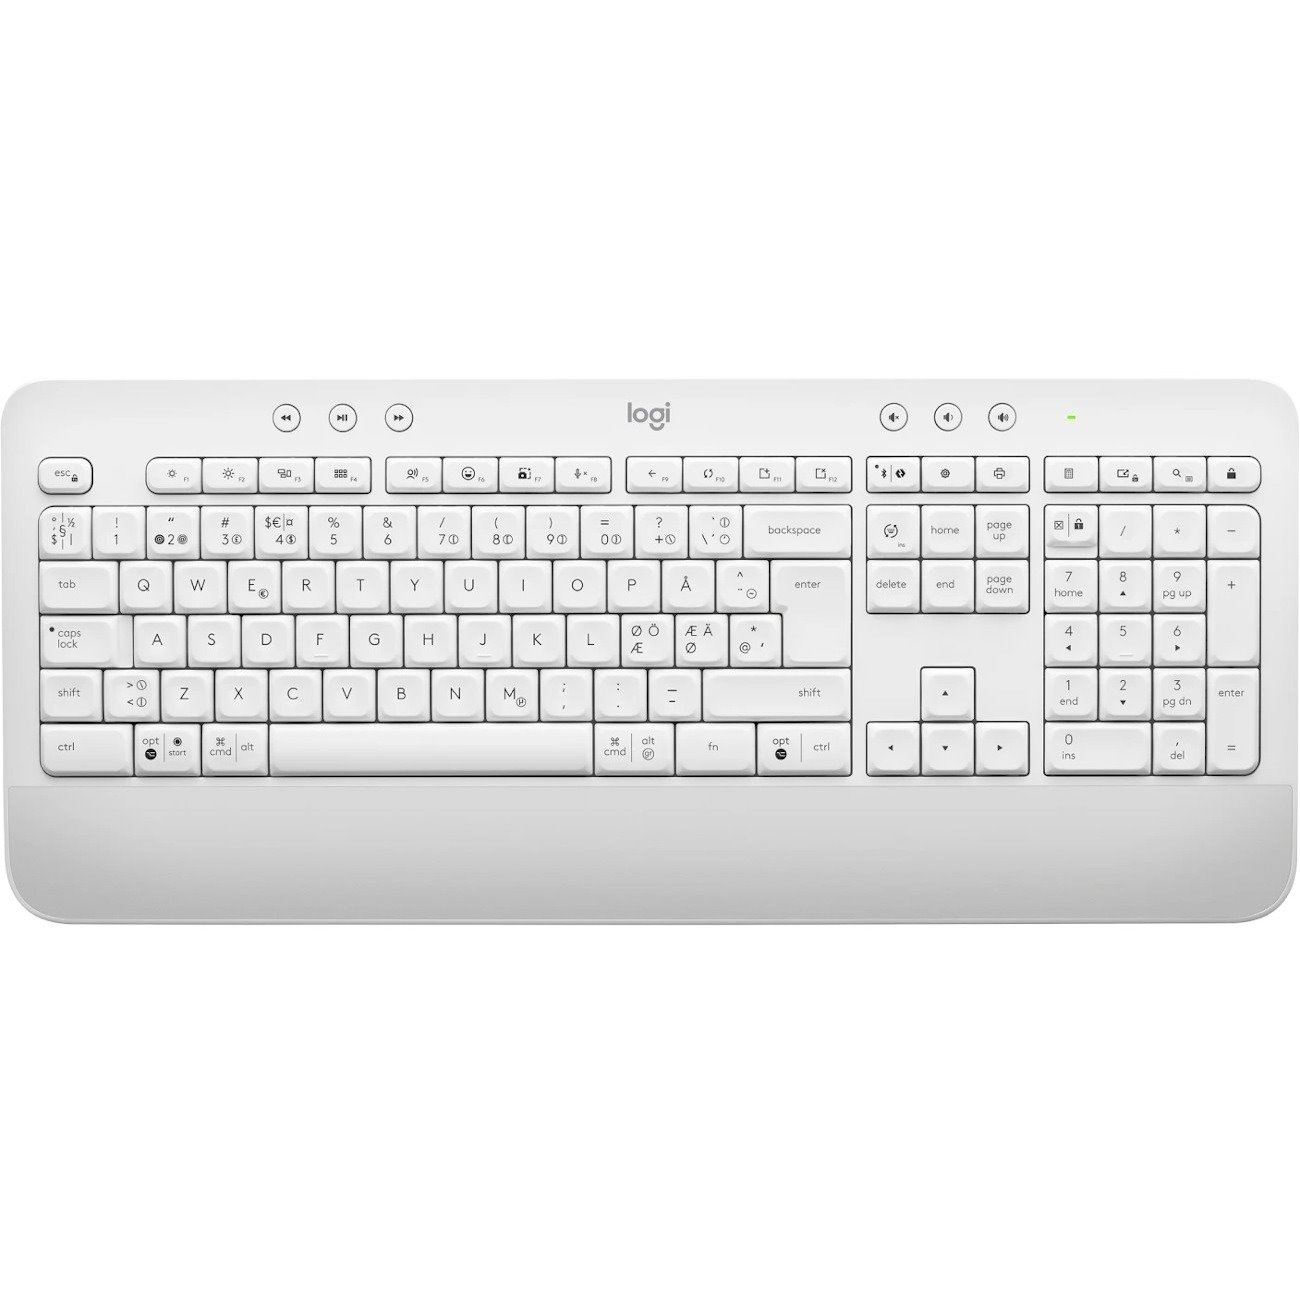 Logitech Signature K650 Keyboard